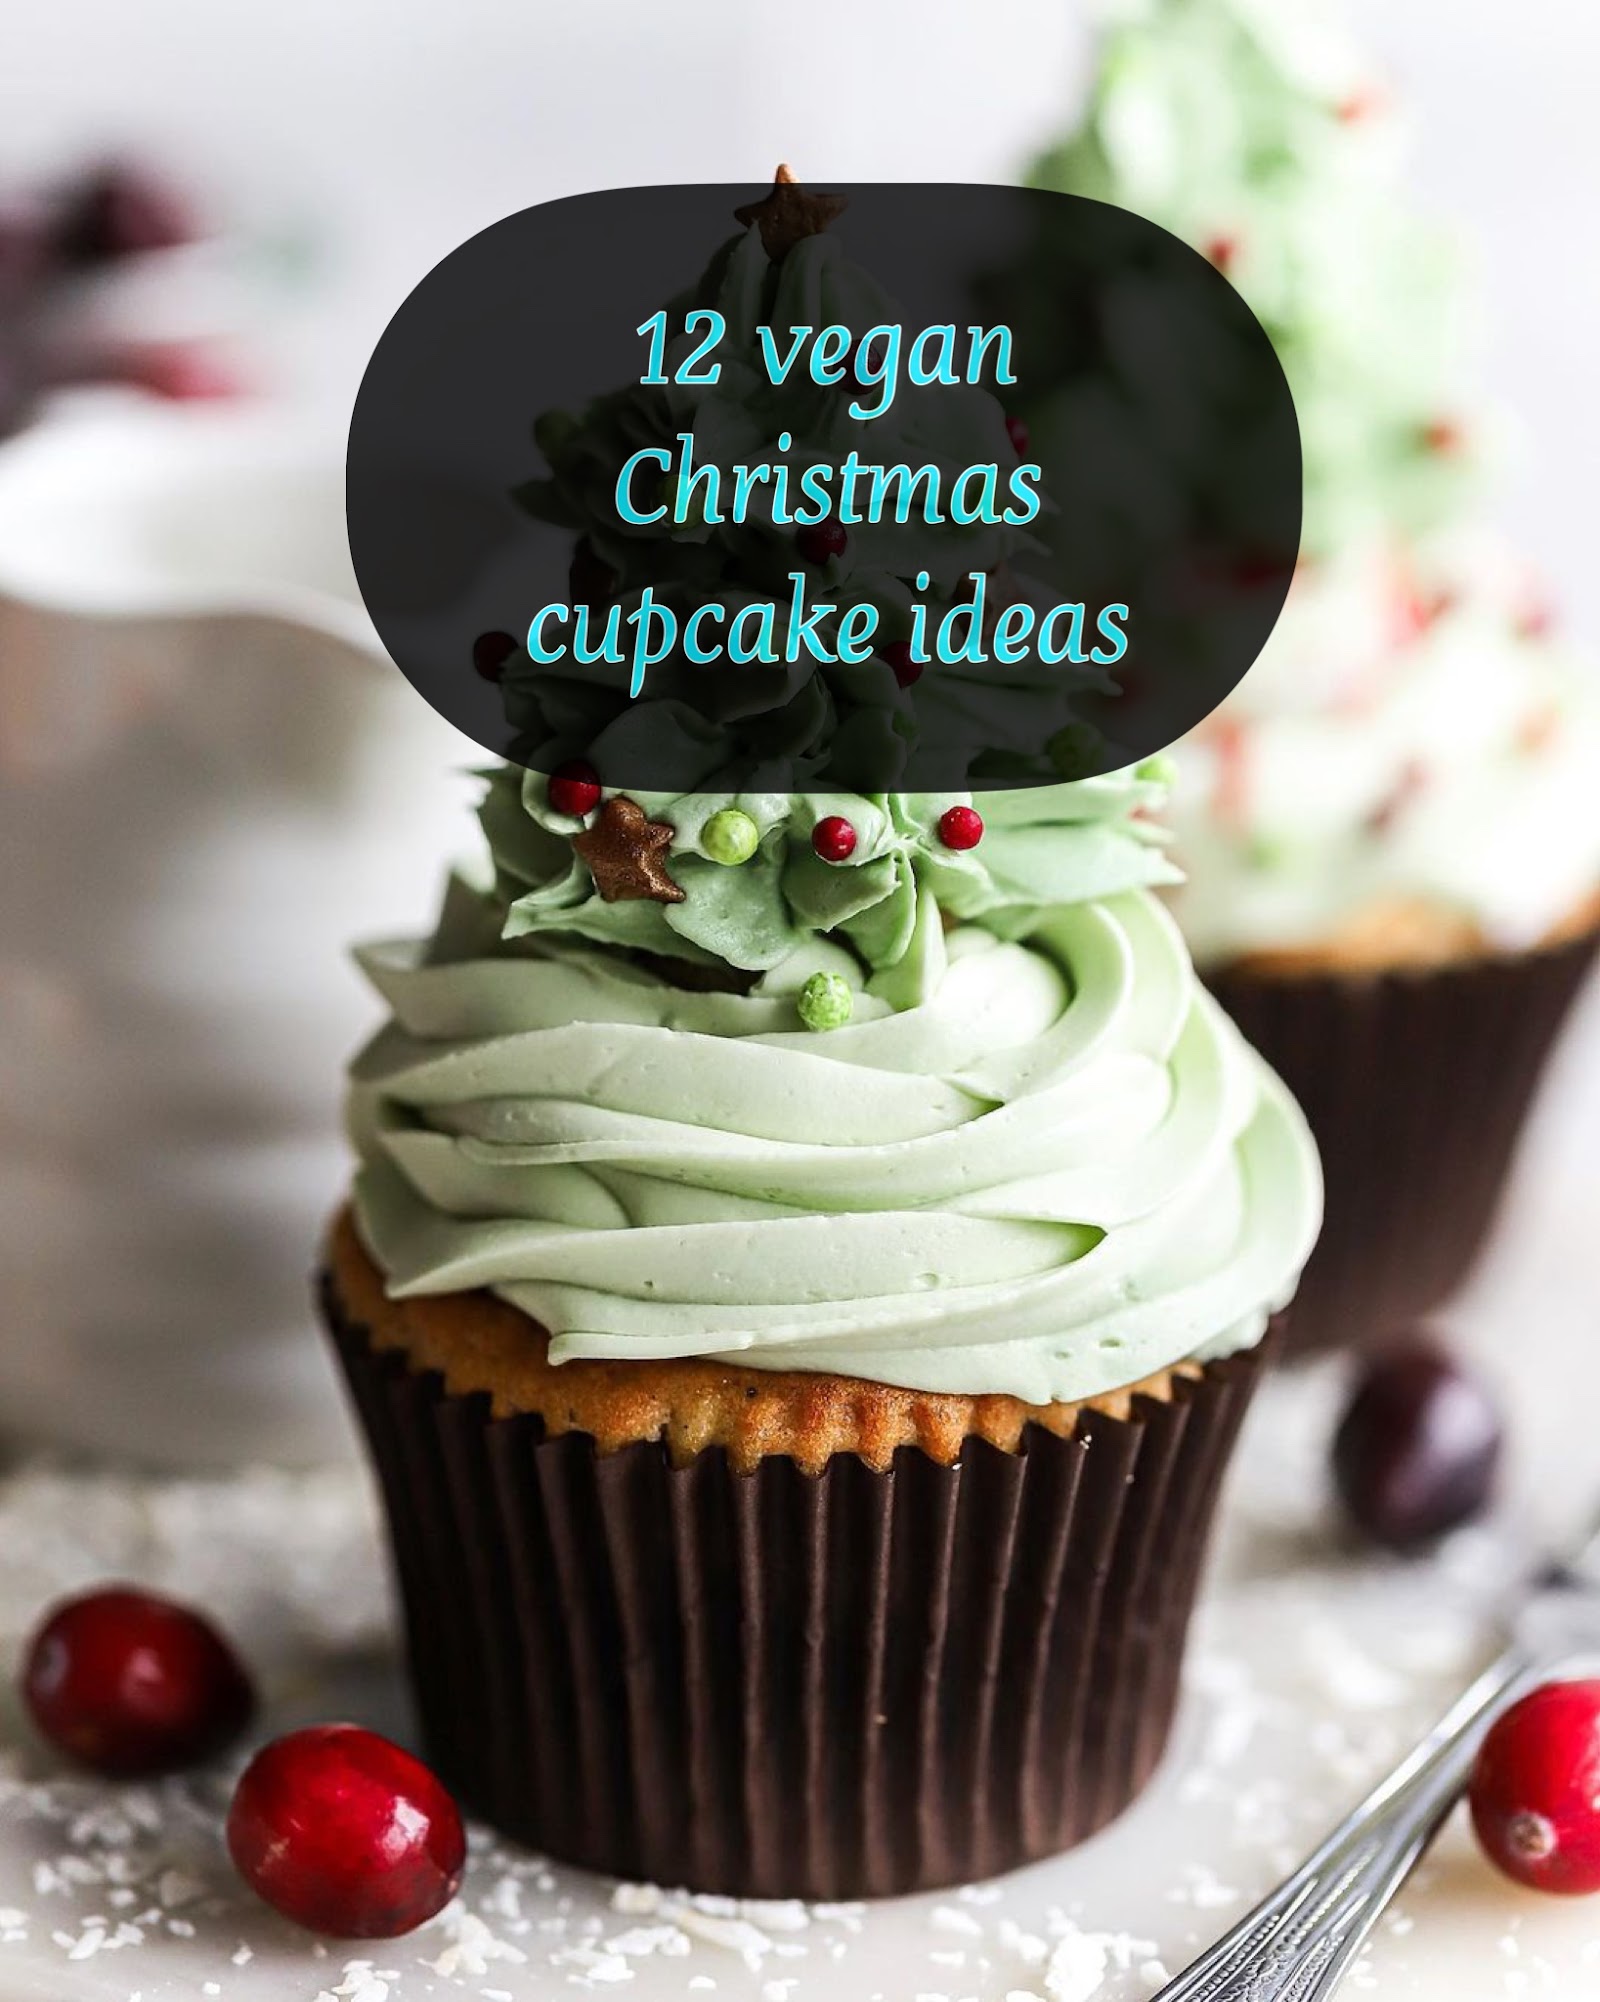 12 vegan Christmas cupcake ideas